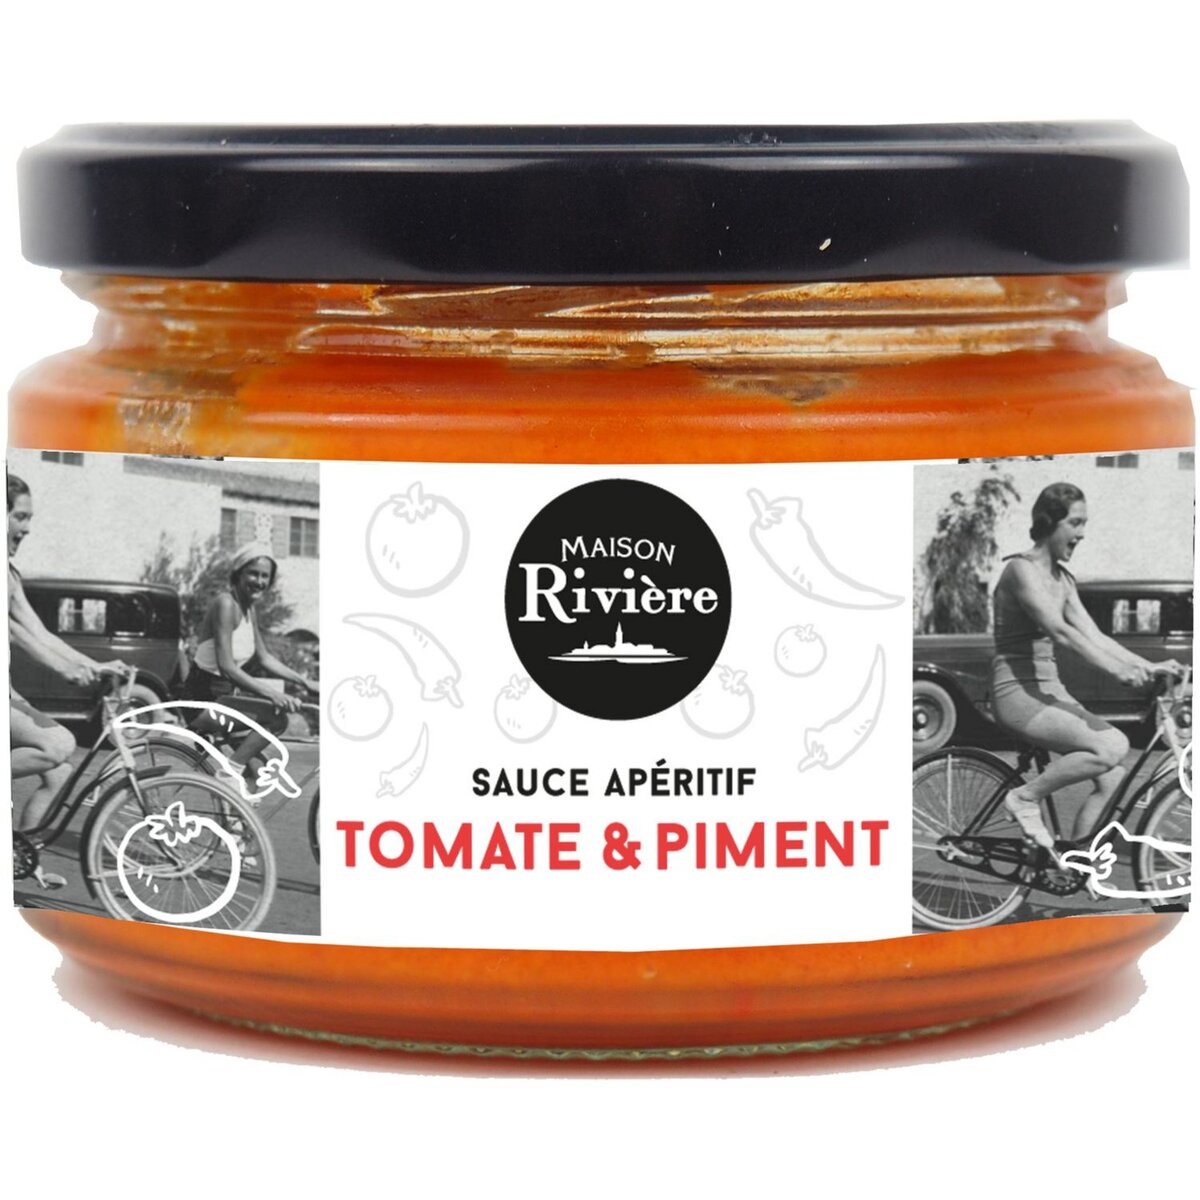 MAISON RIVIERE Sauce apéritif tomate et piment 200g